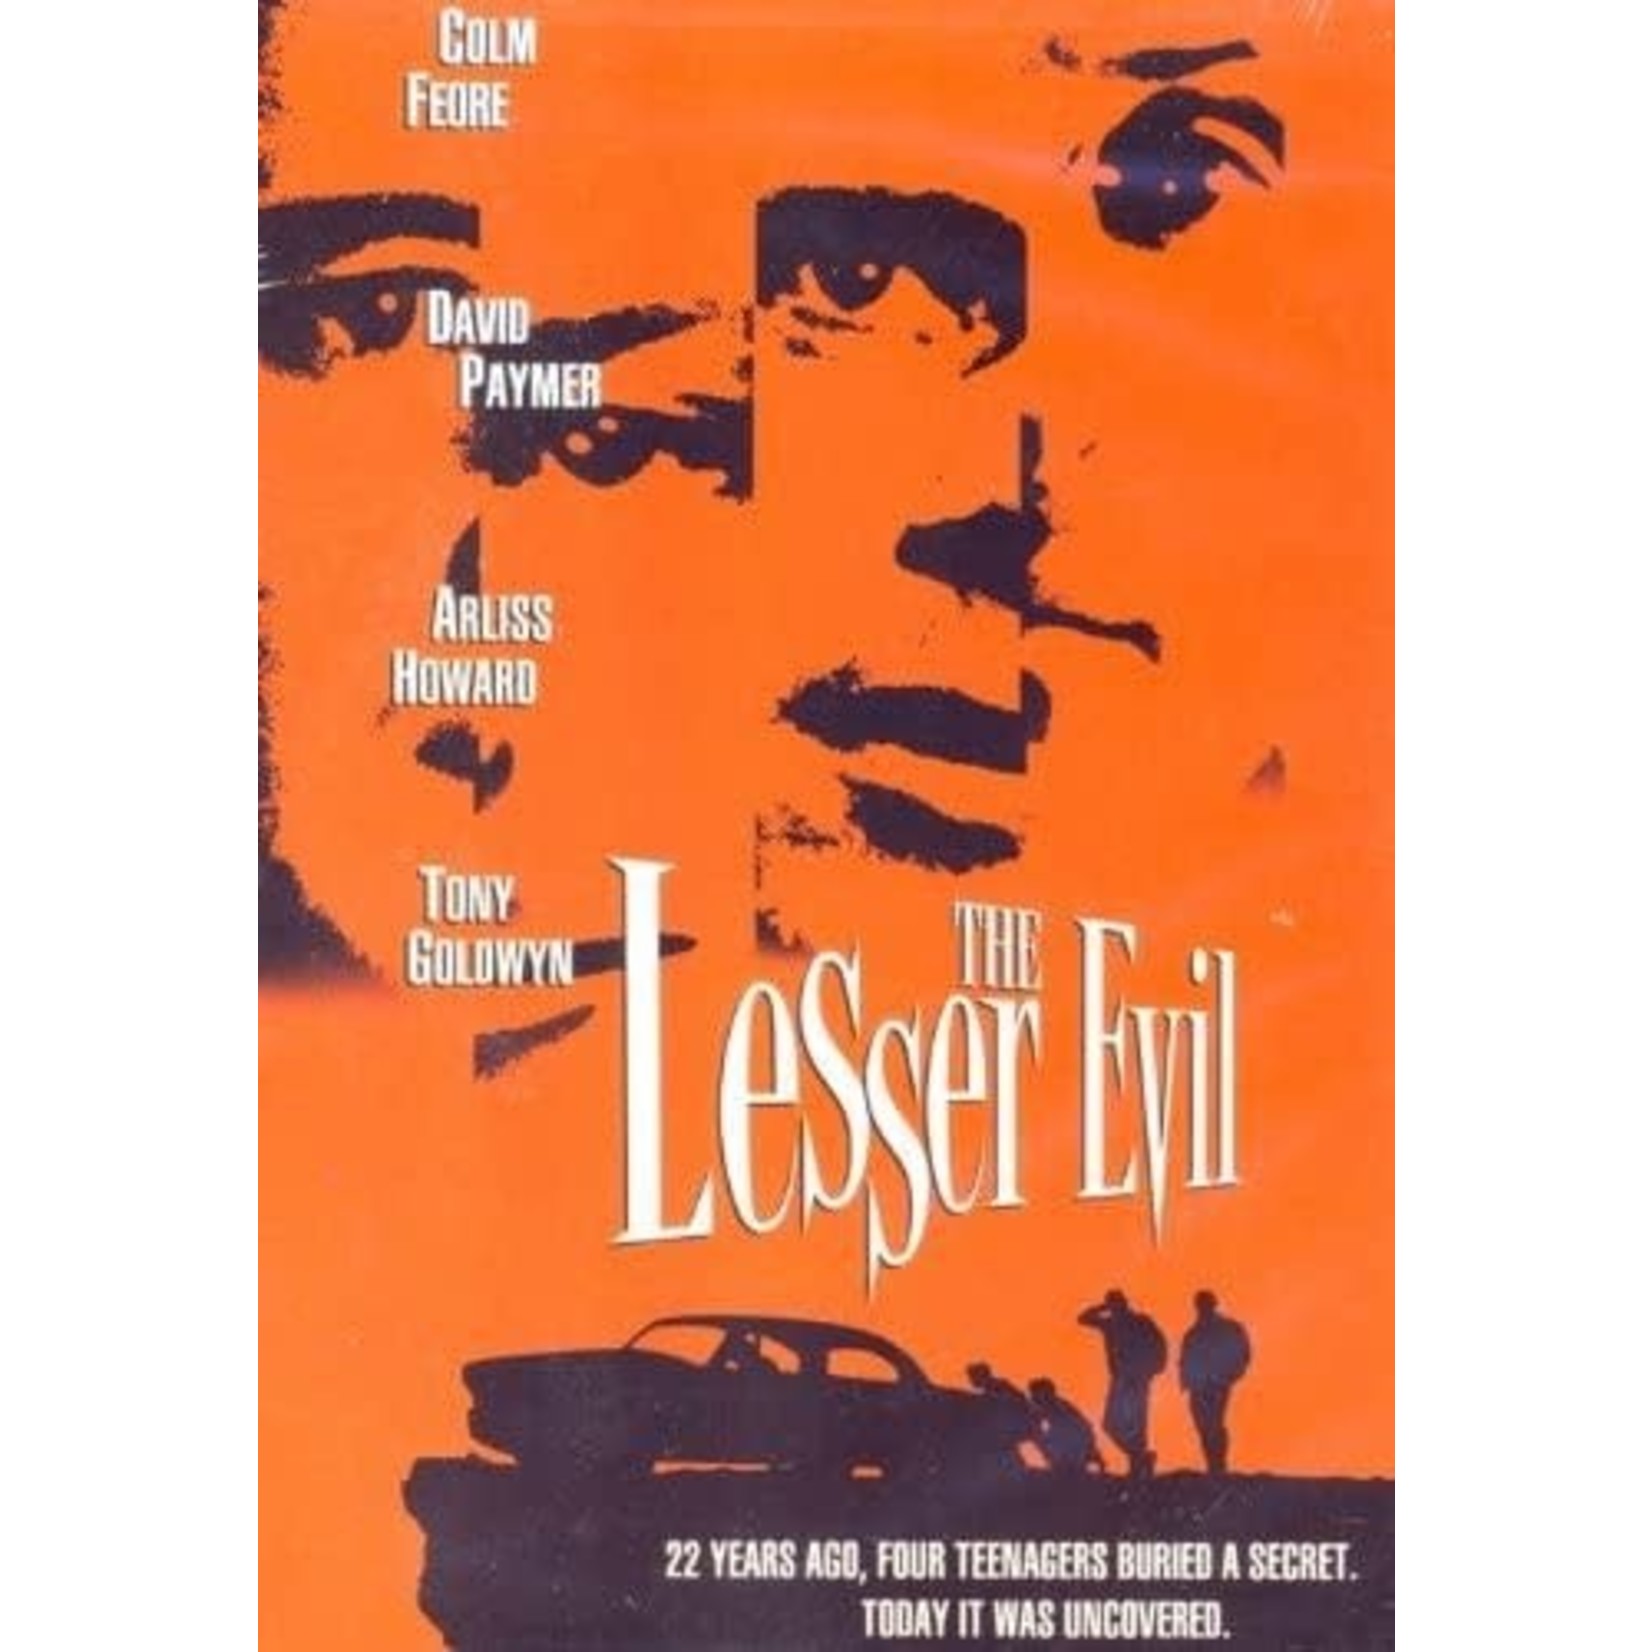 Lesser Evil (1998) [USED DVD]